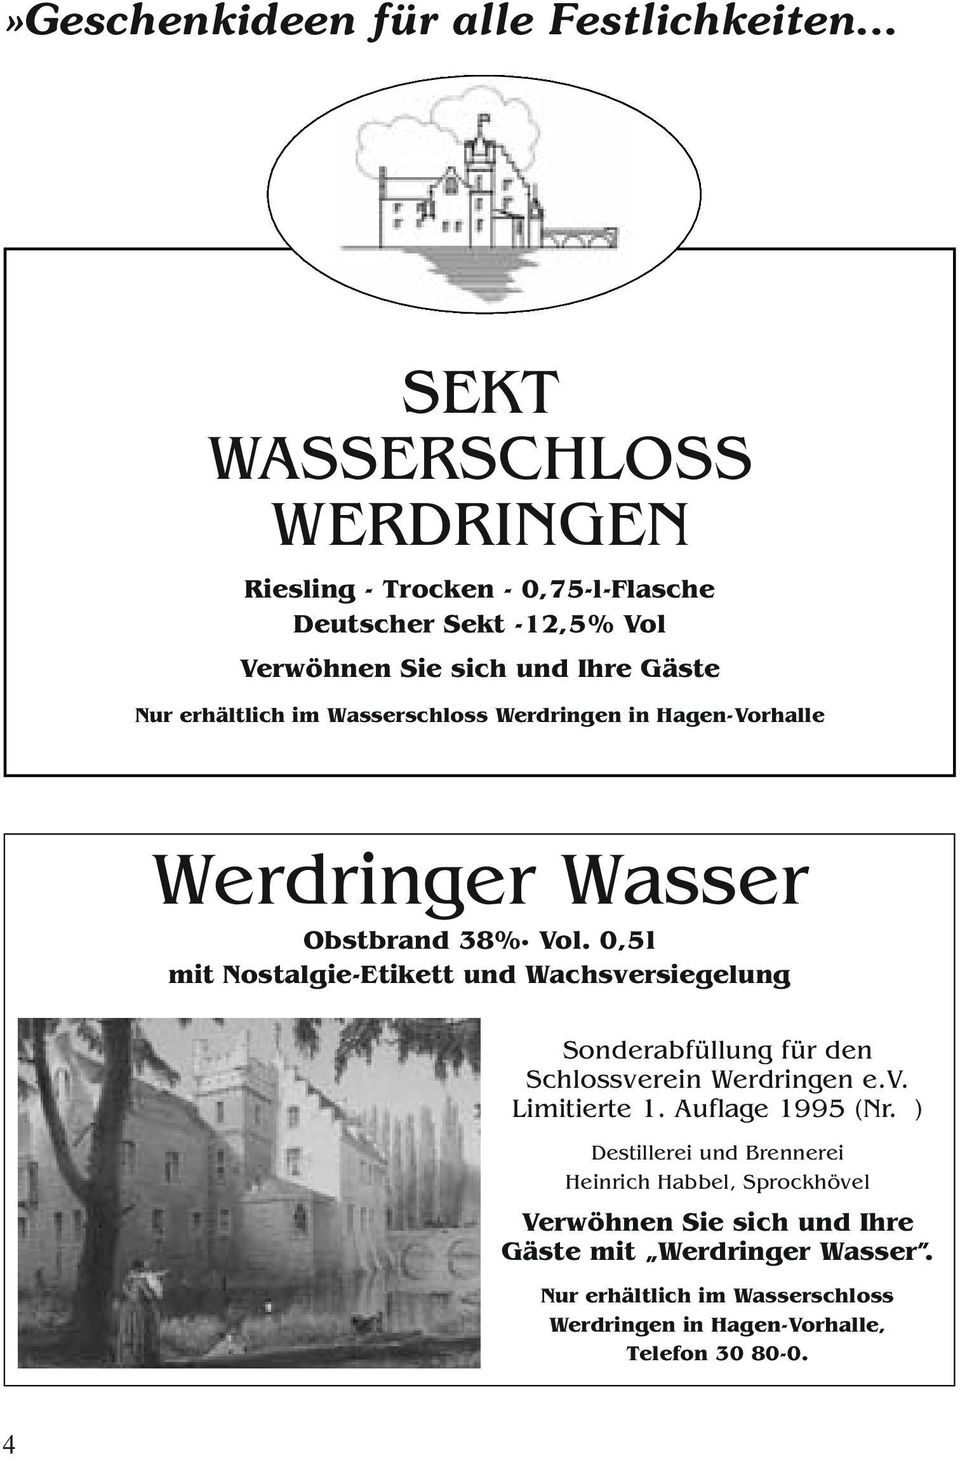 Wasserschloss Werdringen in Hagen-Vorhalle Werdringer Wasser Obstbrand 38% Vol.